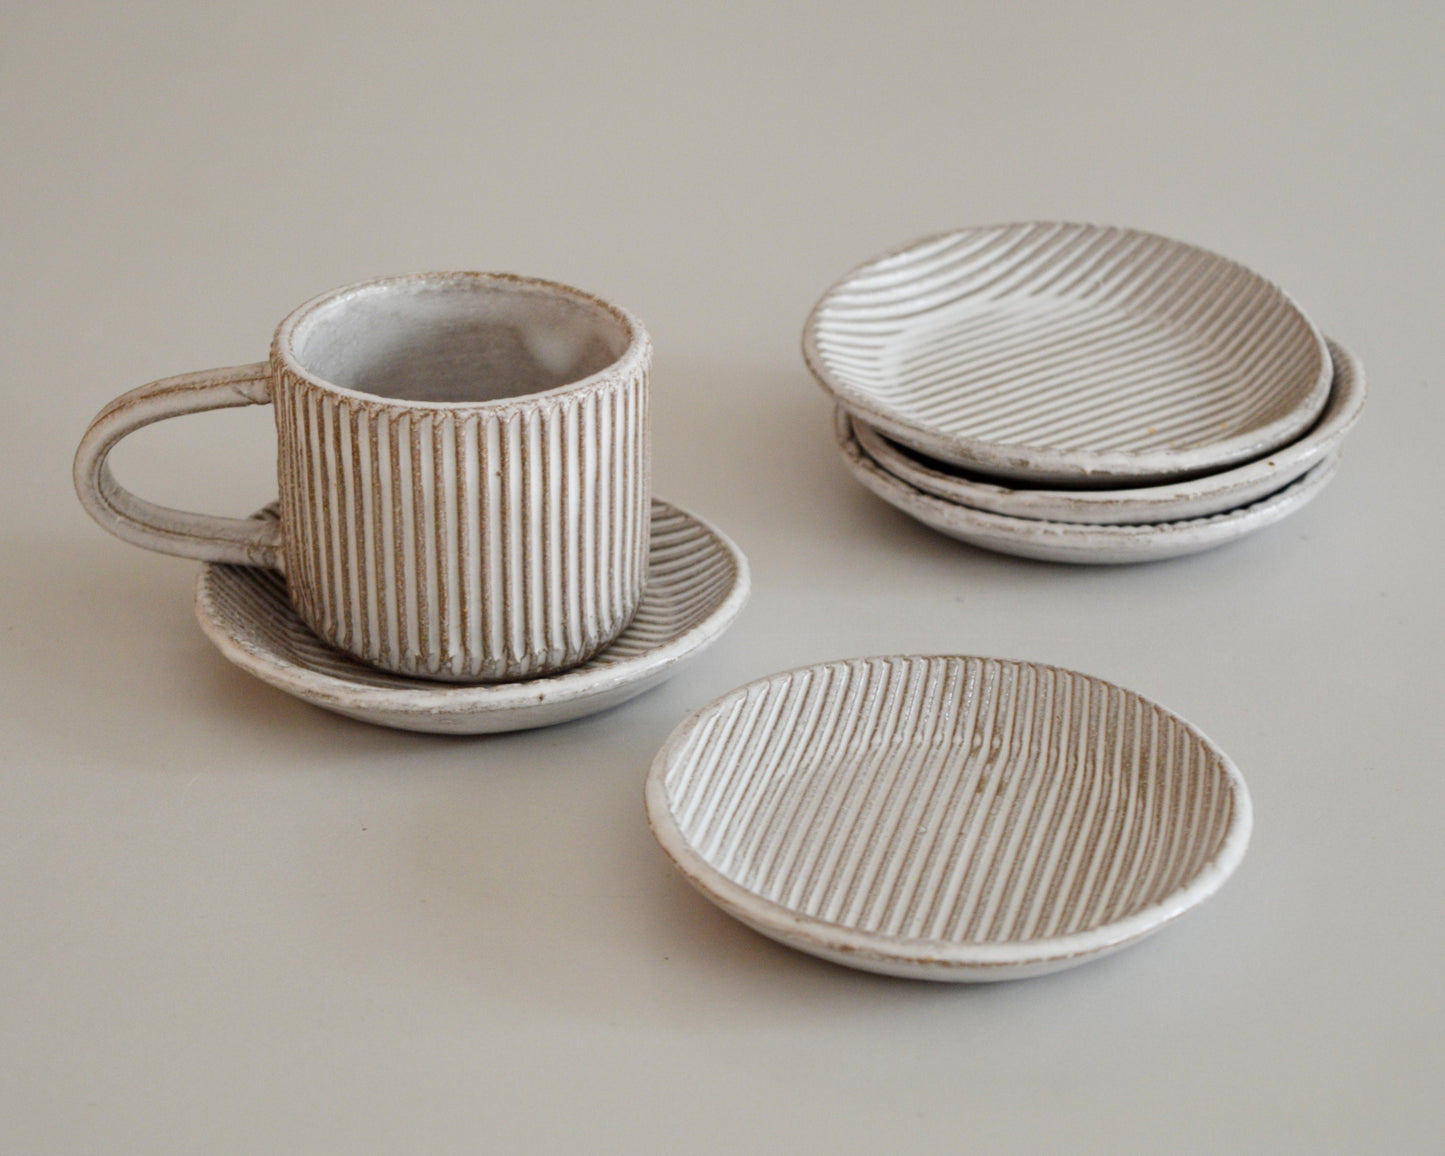 MILLERIGHE Stoneware Little plate / Espresso saucer